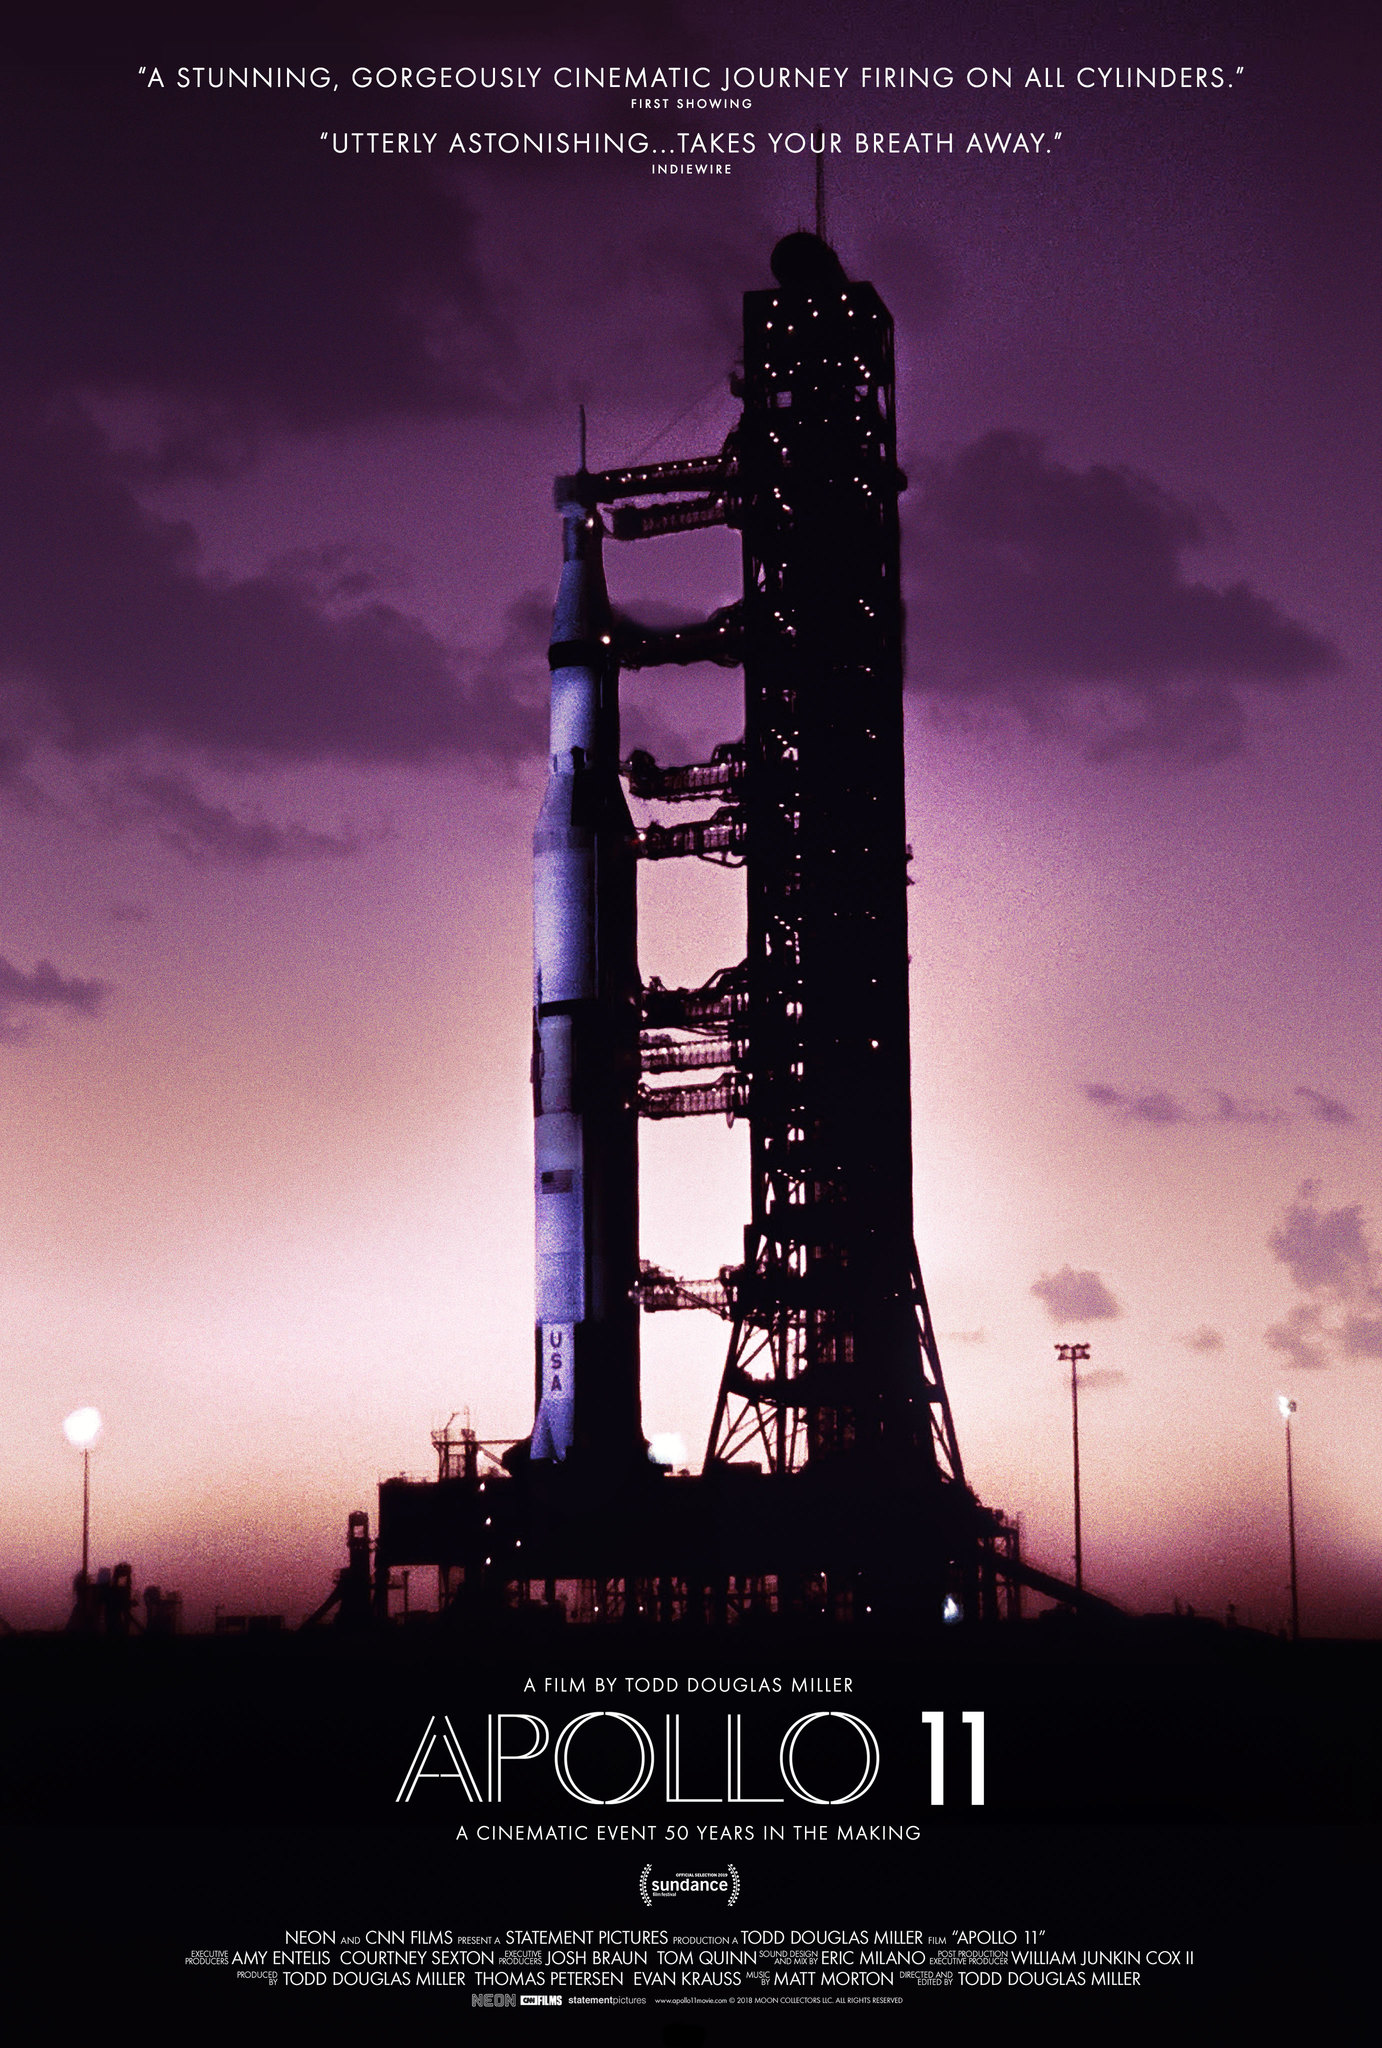 Nonton film Apollo 11 layarkaca21 indoxx1 ganool online streaming terbaru